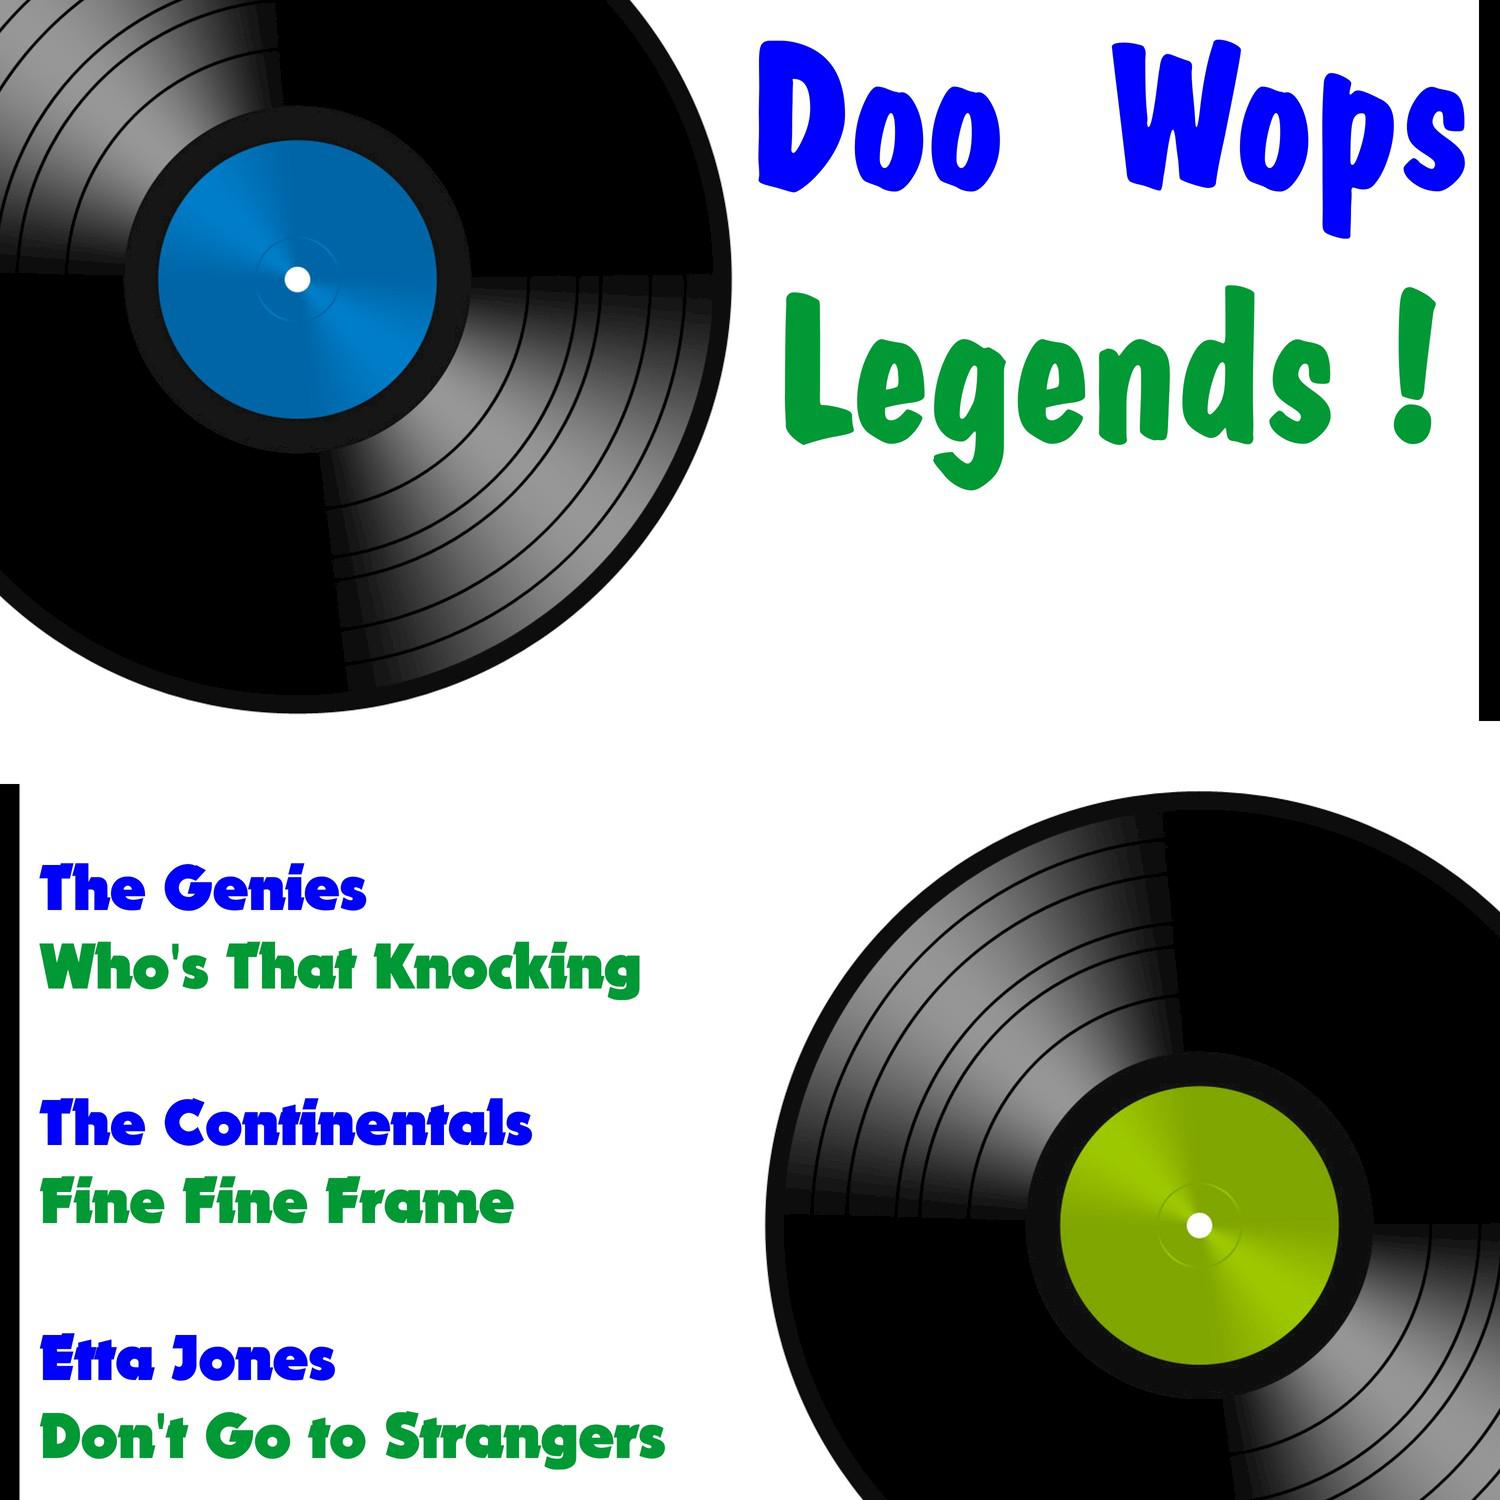 Doo Wops Legends